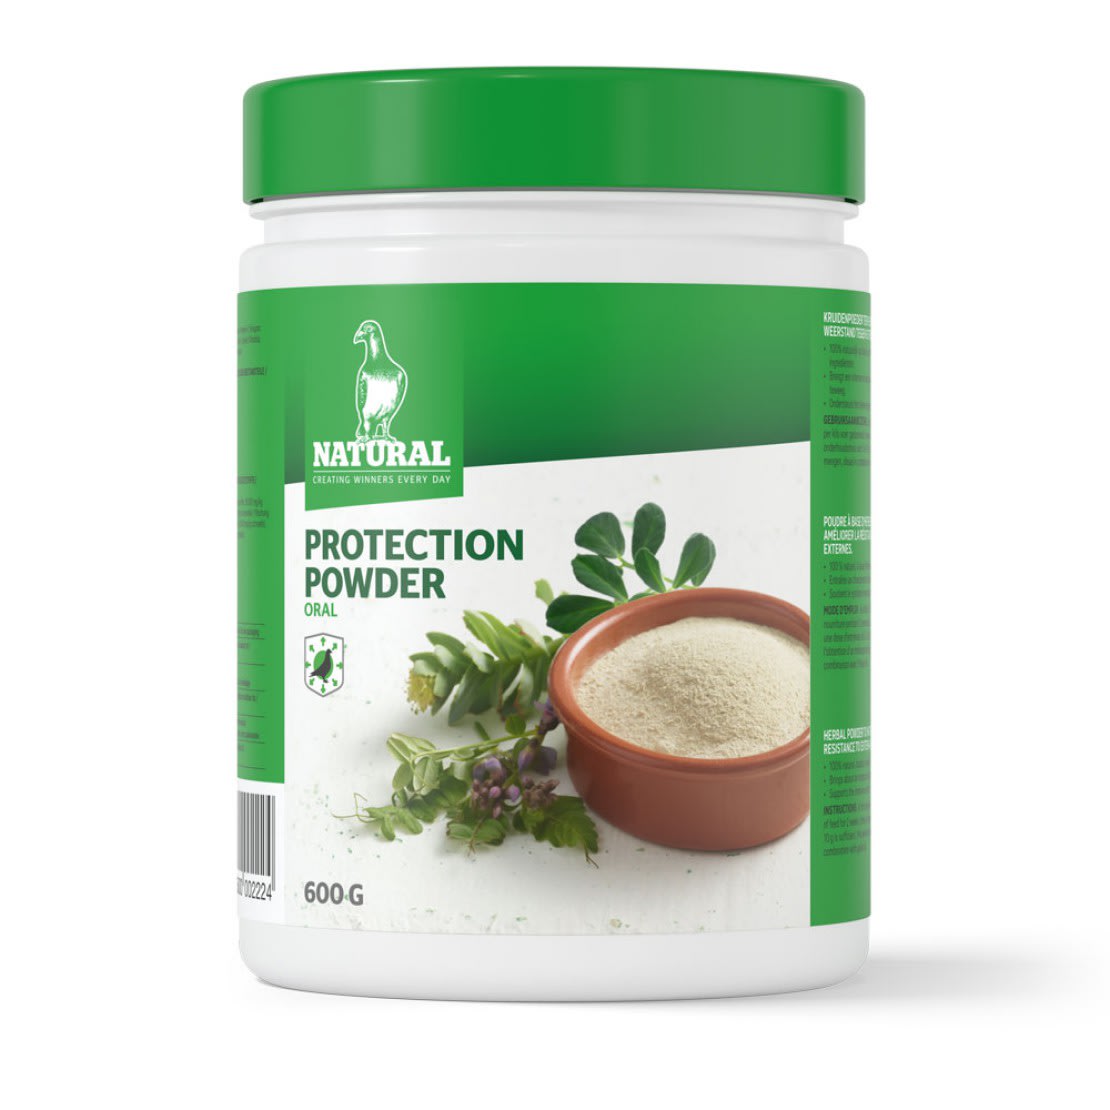 Natural Protection Powder - Oral